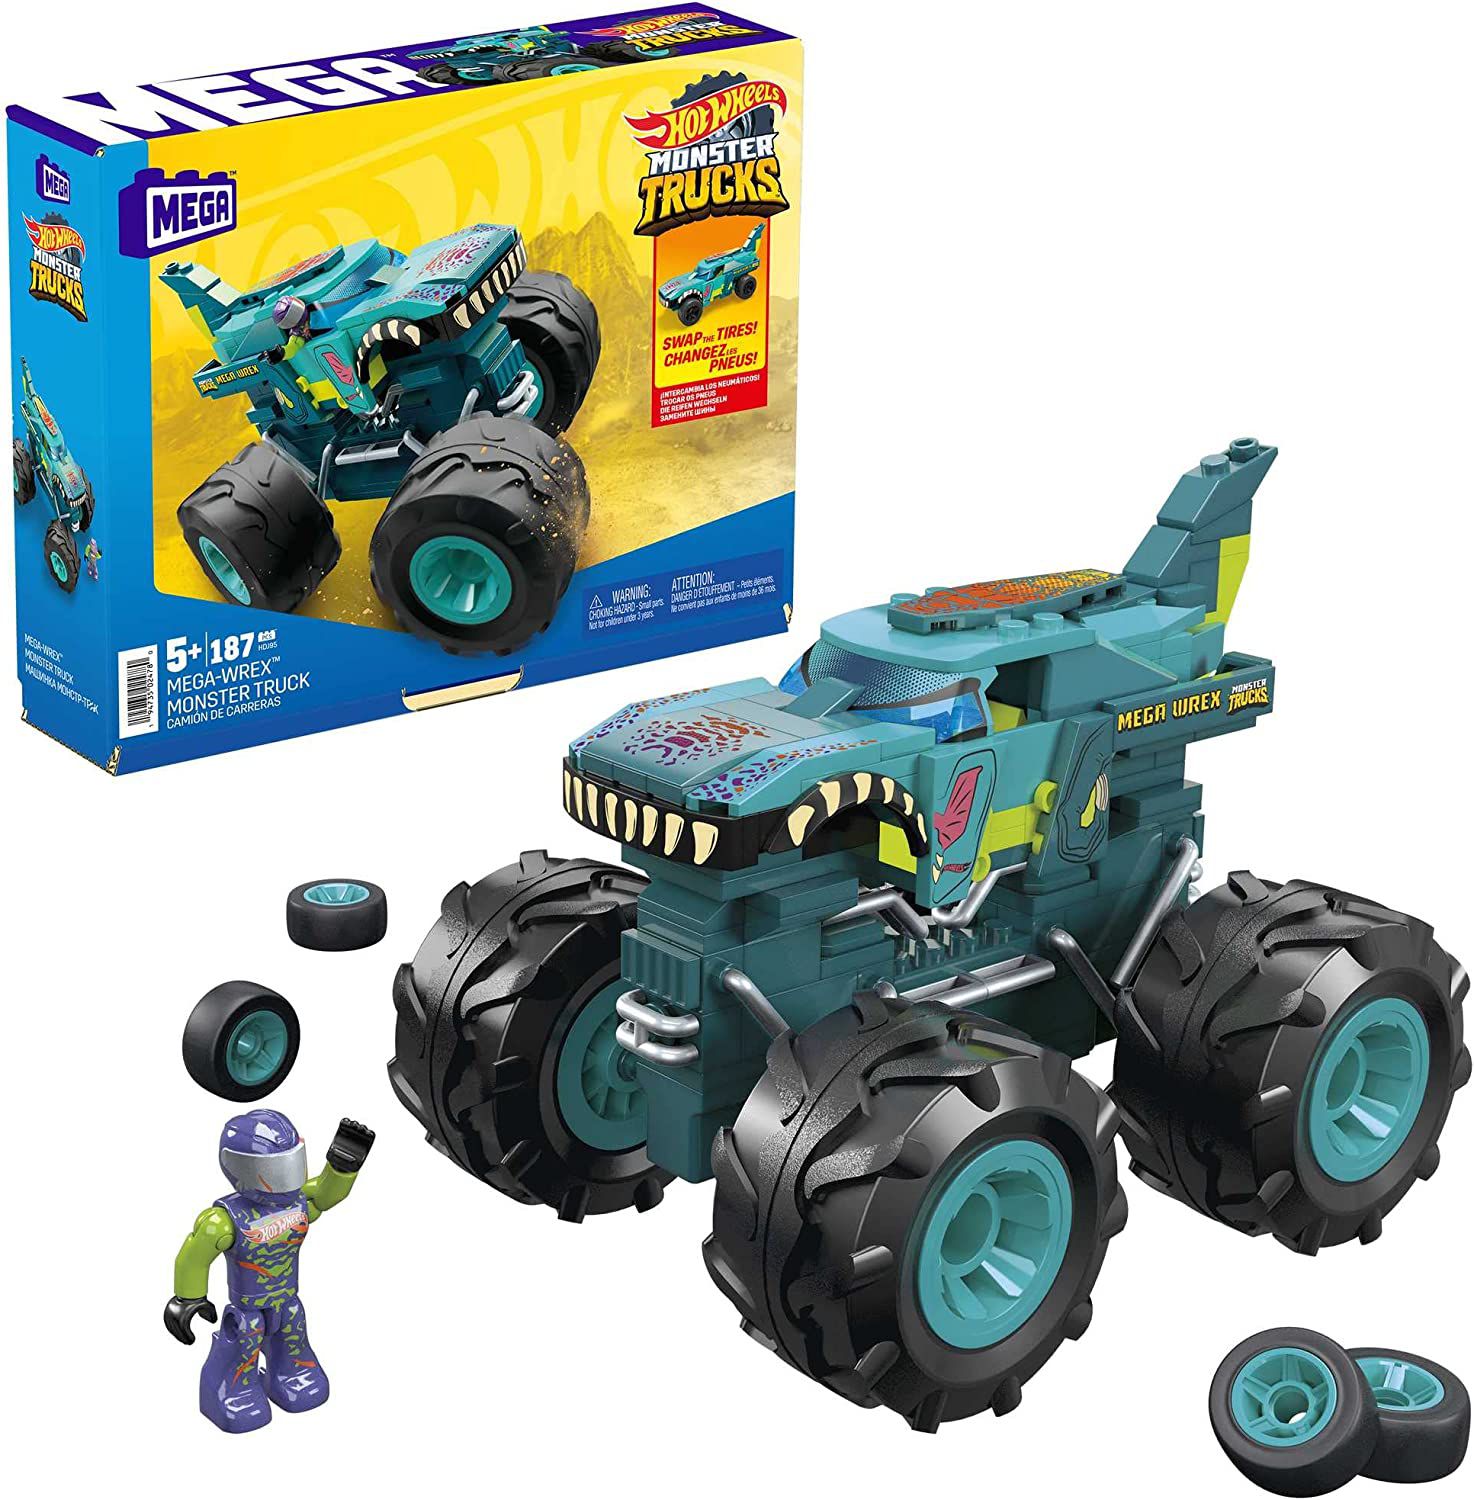 Carrinho Hot Wheels Monster Truck Mega Wrex 1:64 - Mattel em